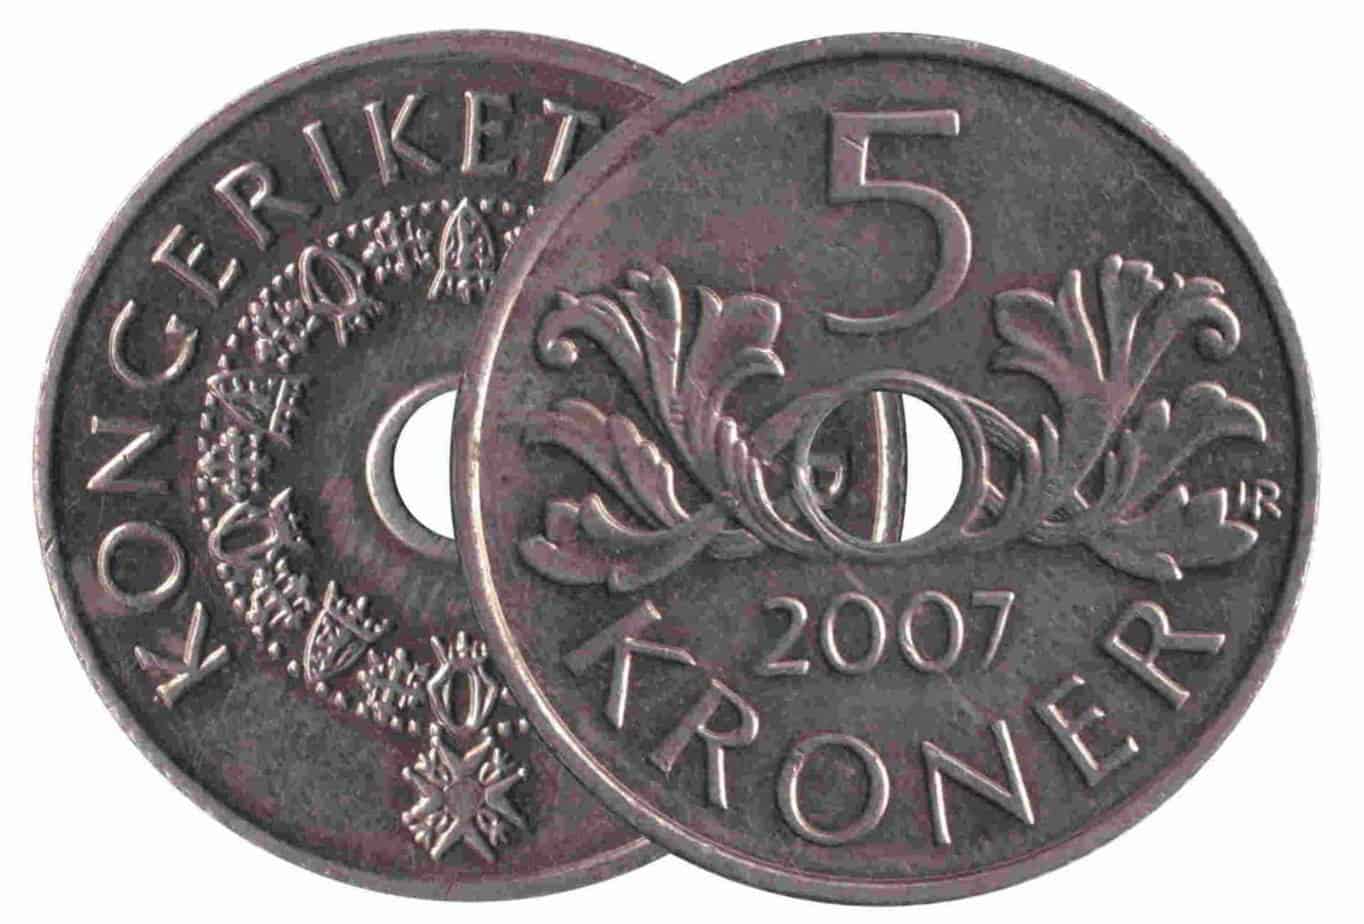 norwegian coinage